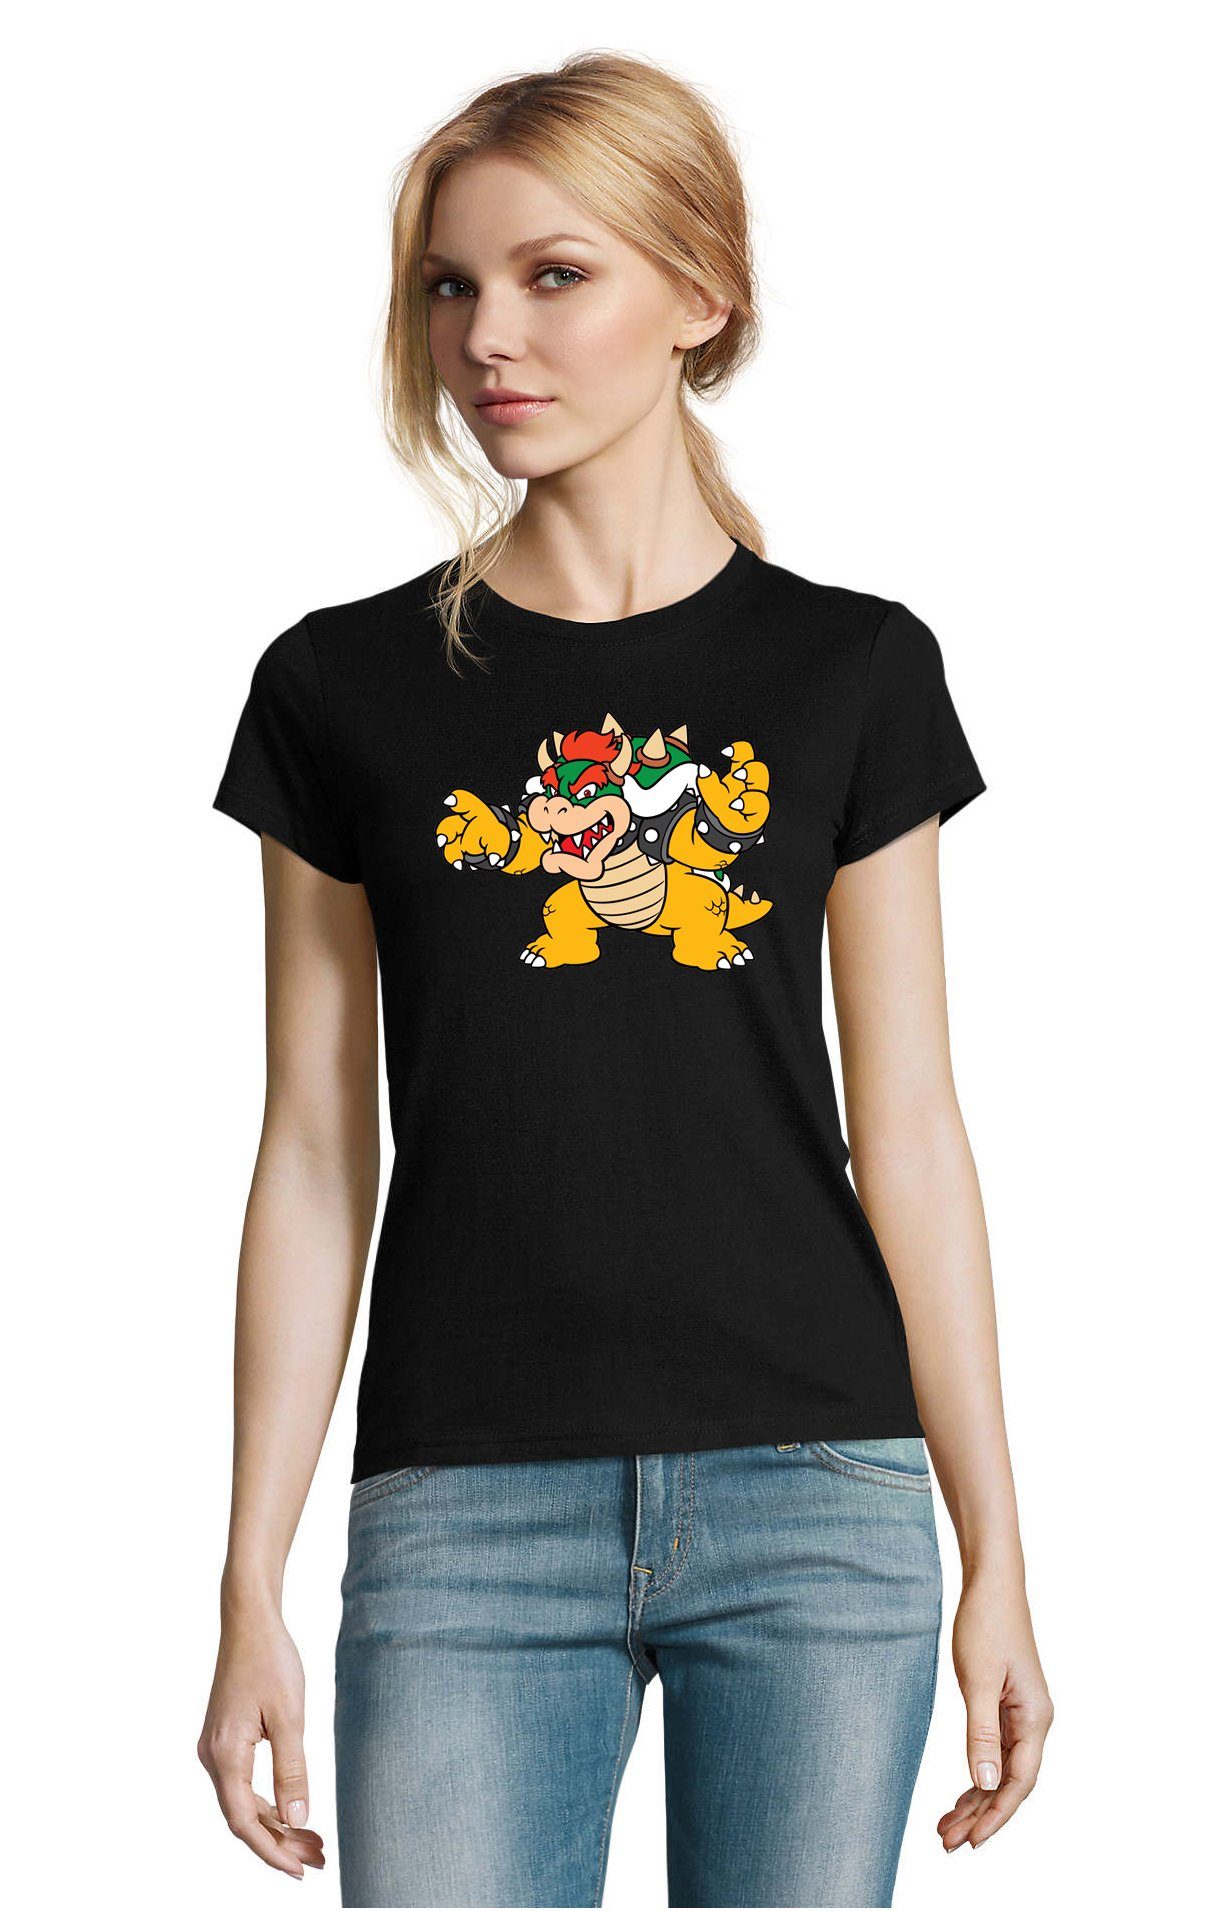 Blondie & Brownie T-Shirt Damen Bowser Nintendo Mario Yoshi Luigi Game Gamer Gaming Konsole Schwarz